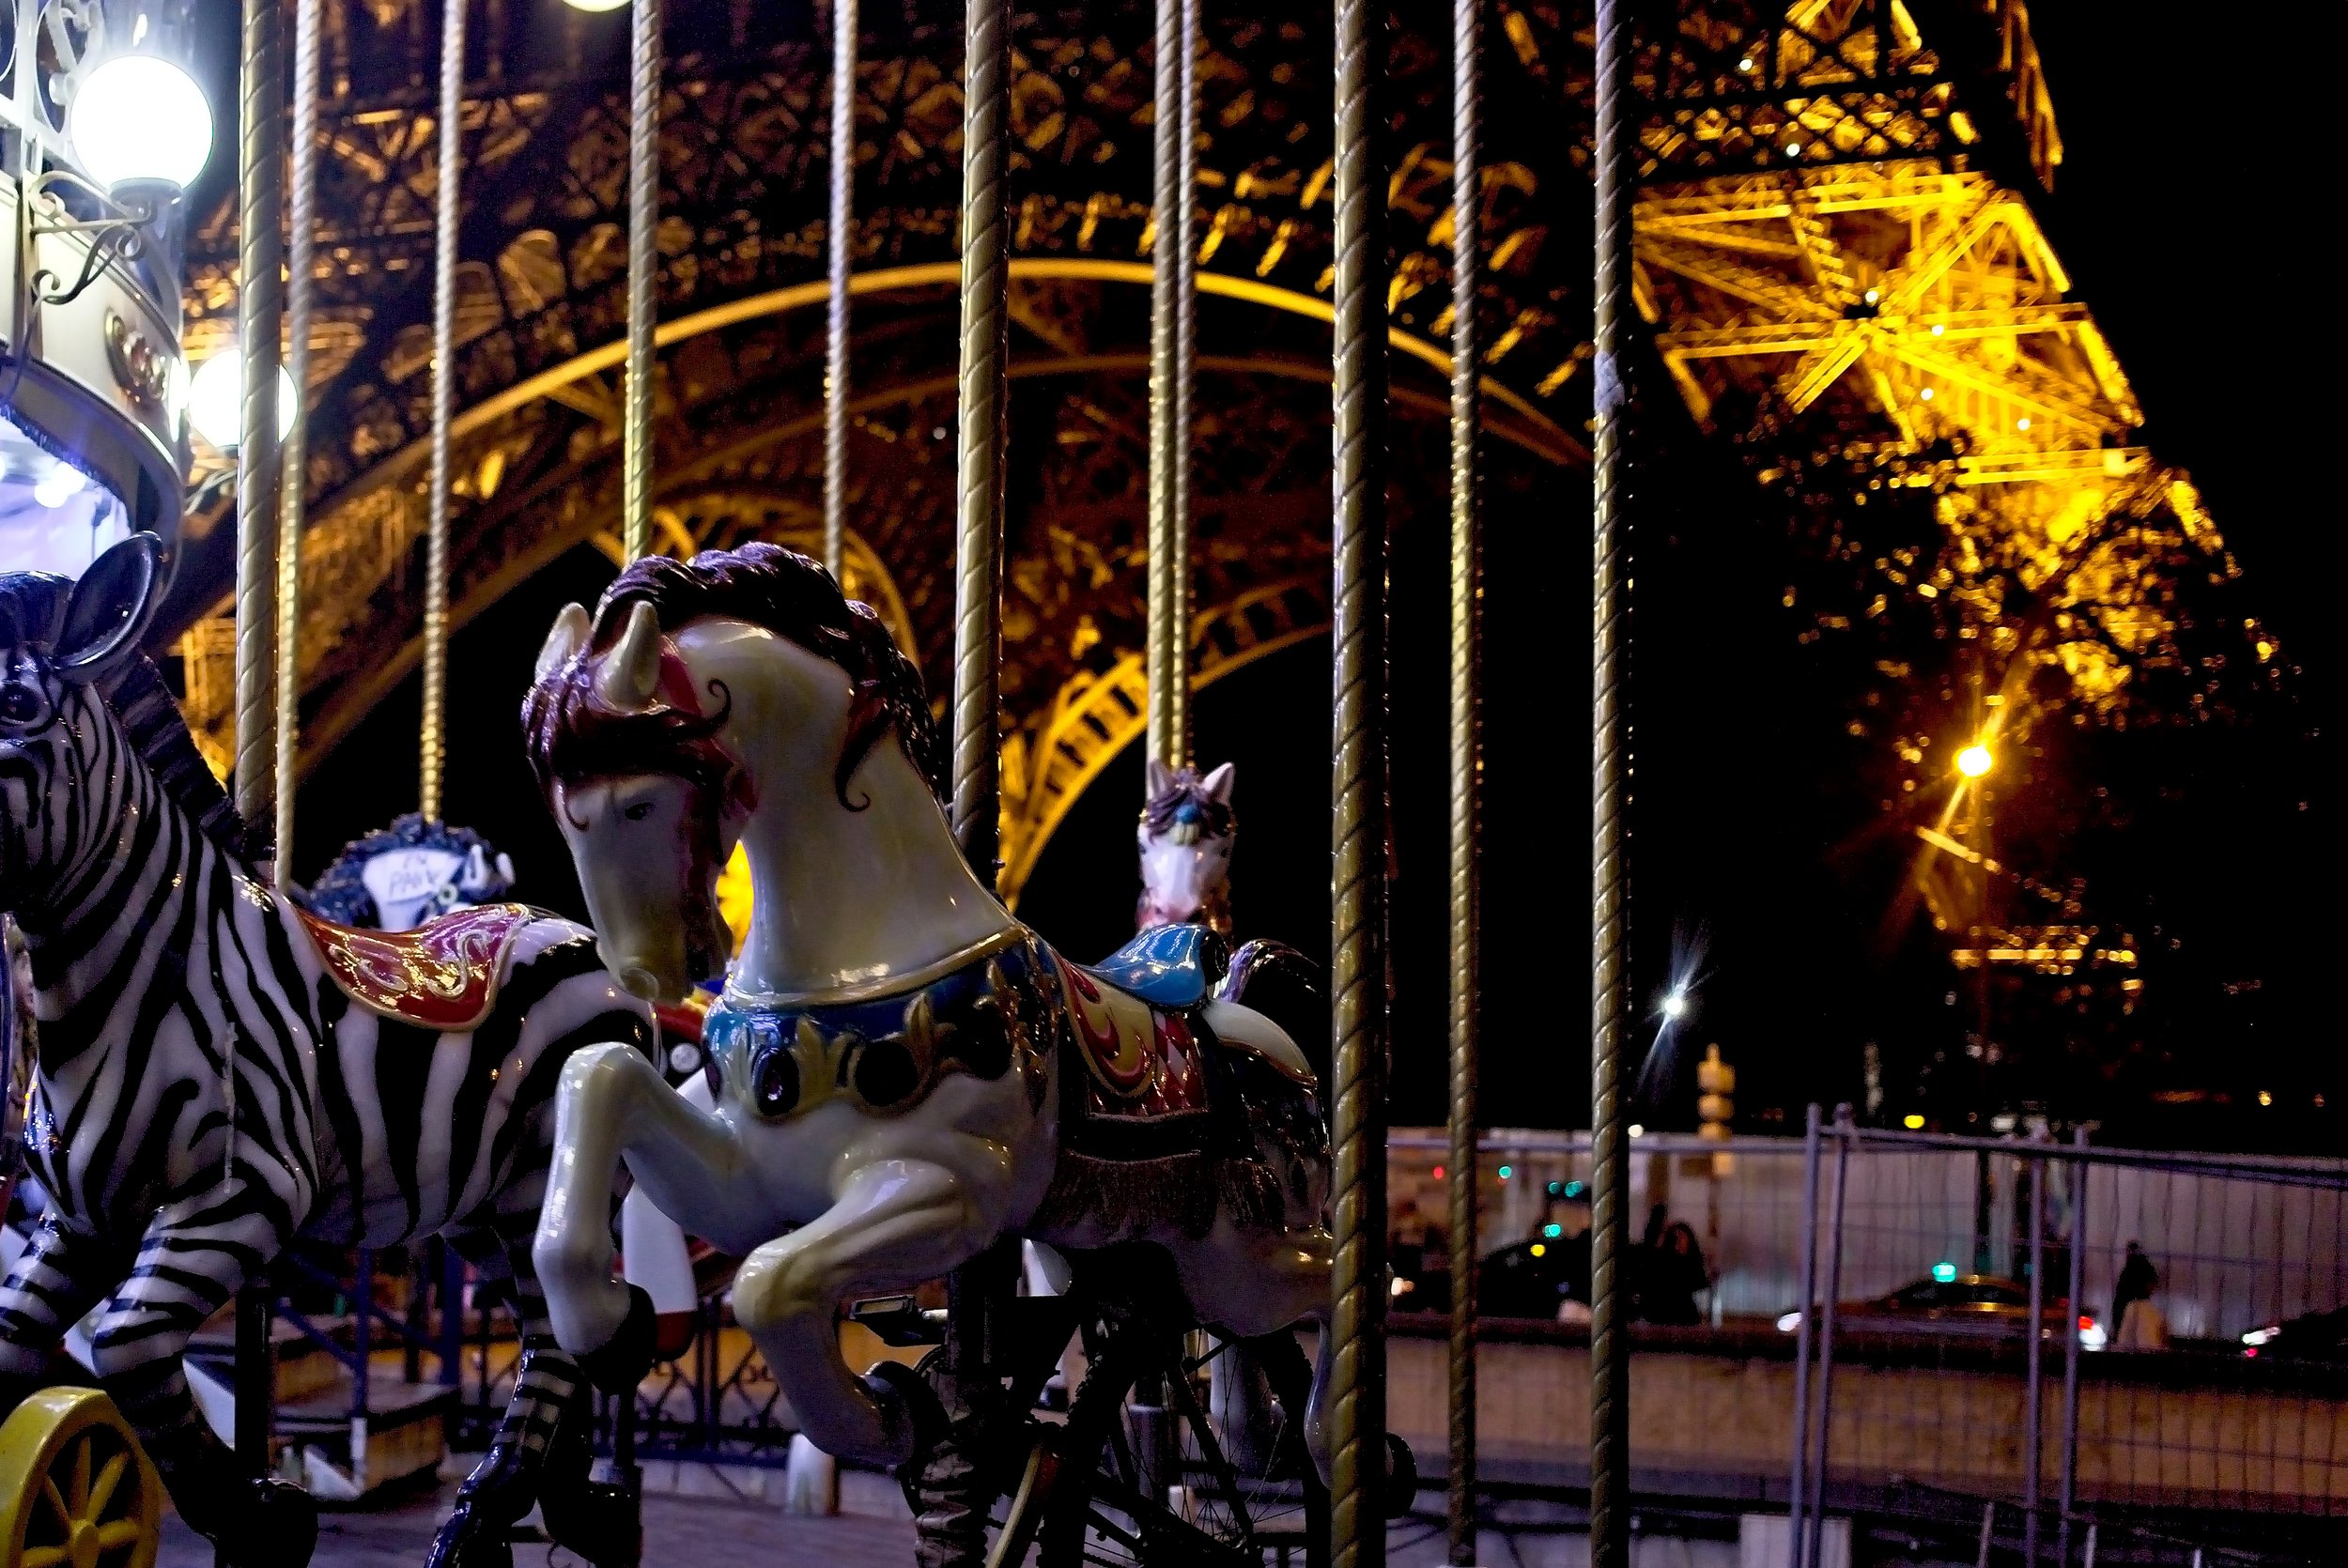 Fairground, Eiffel Tower